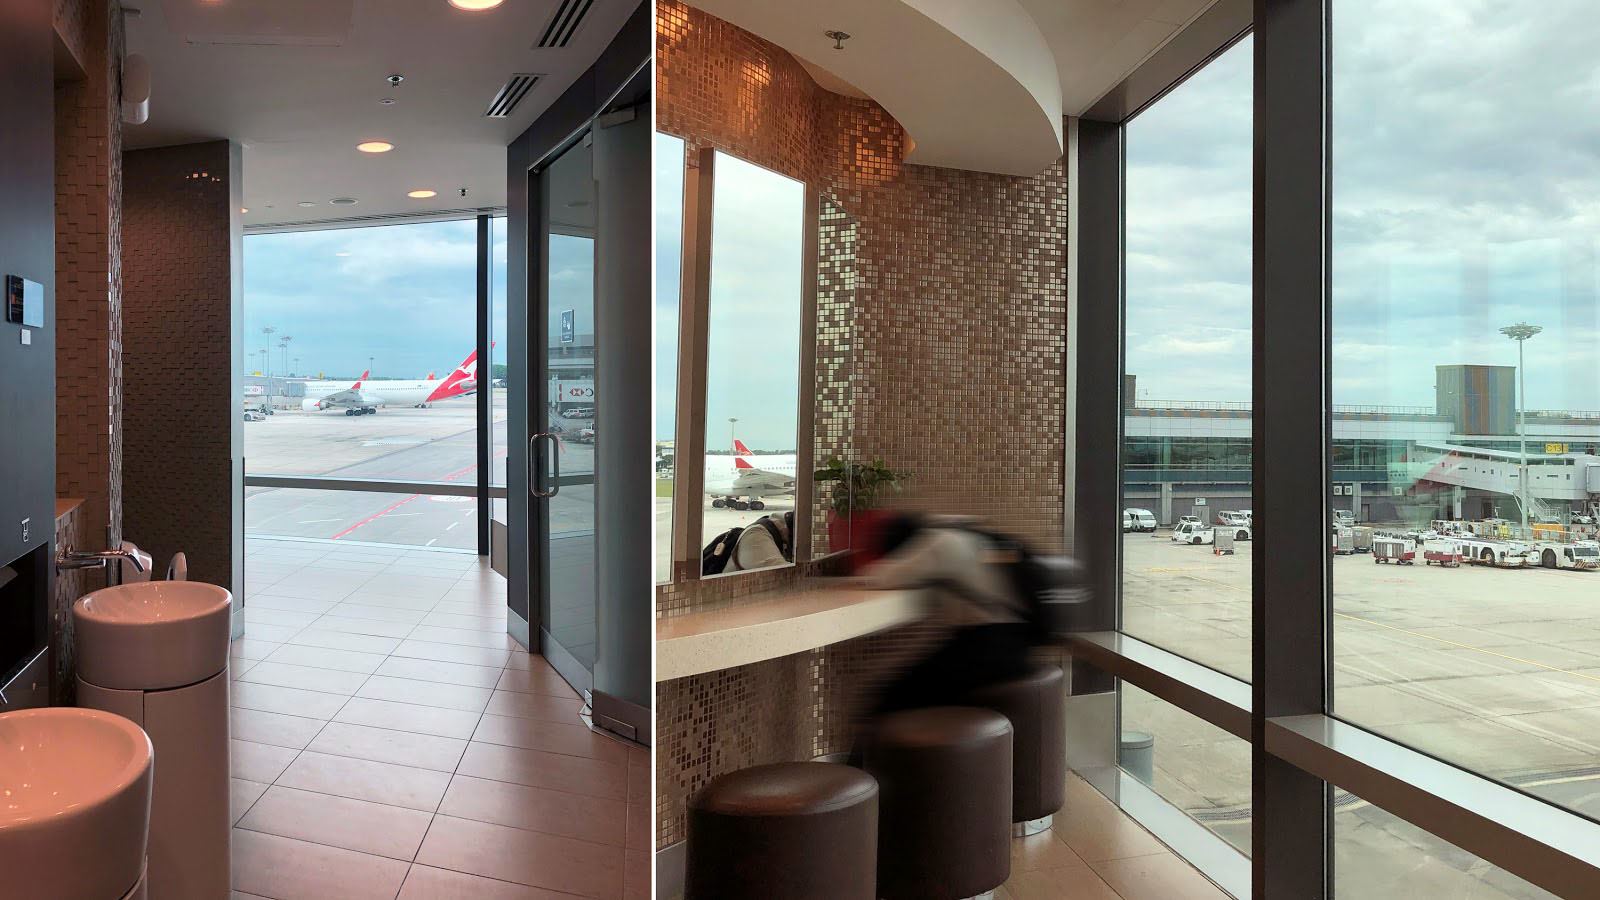 Changi Airport - Bathroom views